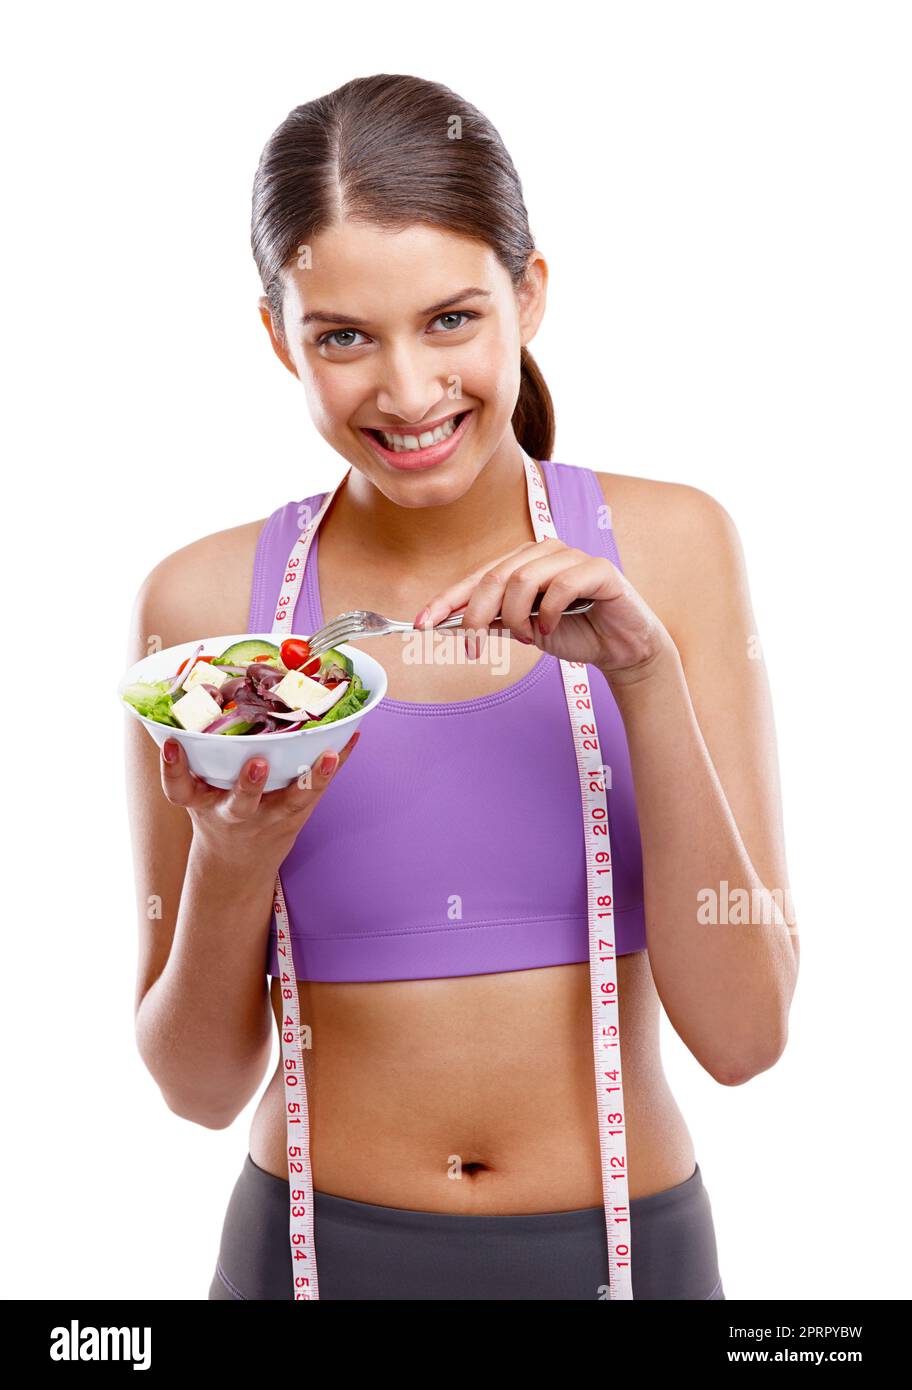 Fitness ist eine Belohnung, keine Strafe. Studio-Porträt einer schönen jungen Frau in Sportkleidung mit einer Schüssel Salat. Stockfoto